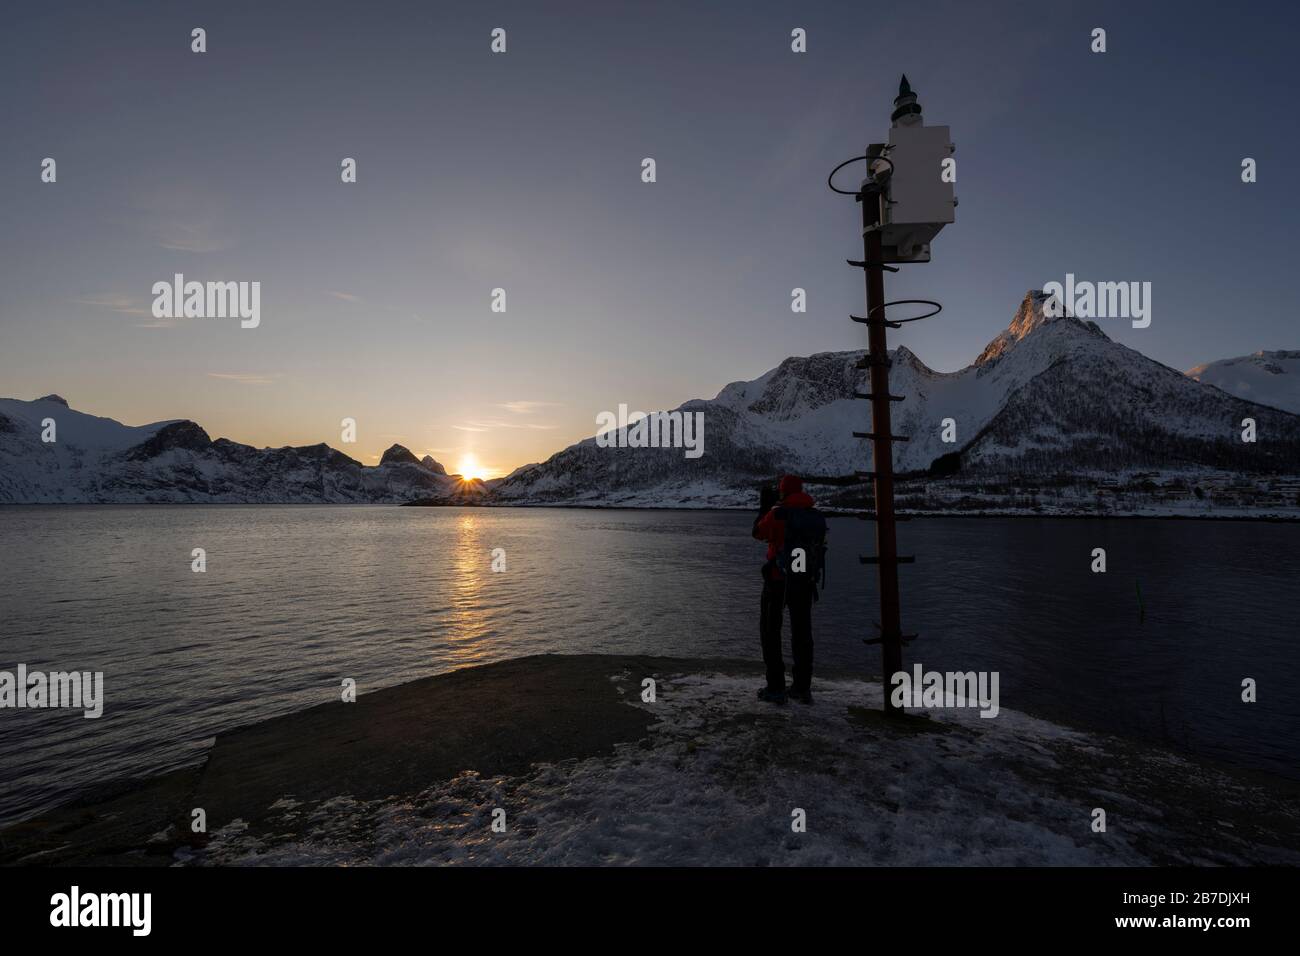 Photographe de sexe masculin qui capture le paysage d'hiver à Senja et dans la chaîne de montagnes de Norlandet, en Norvège. Banque D'Images